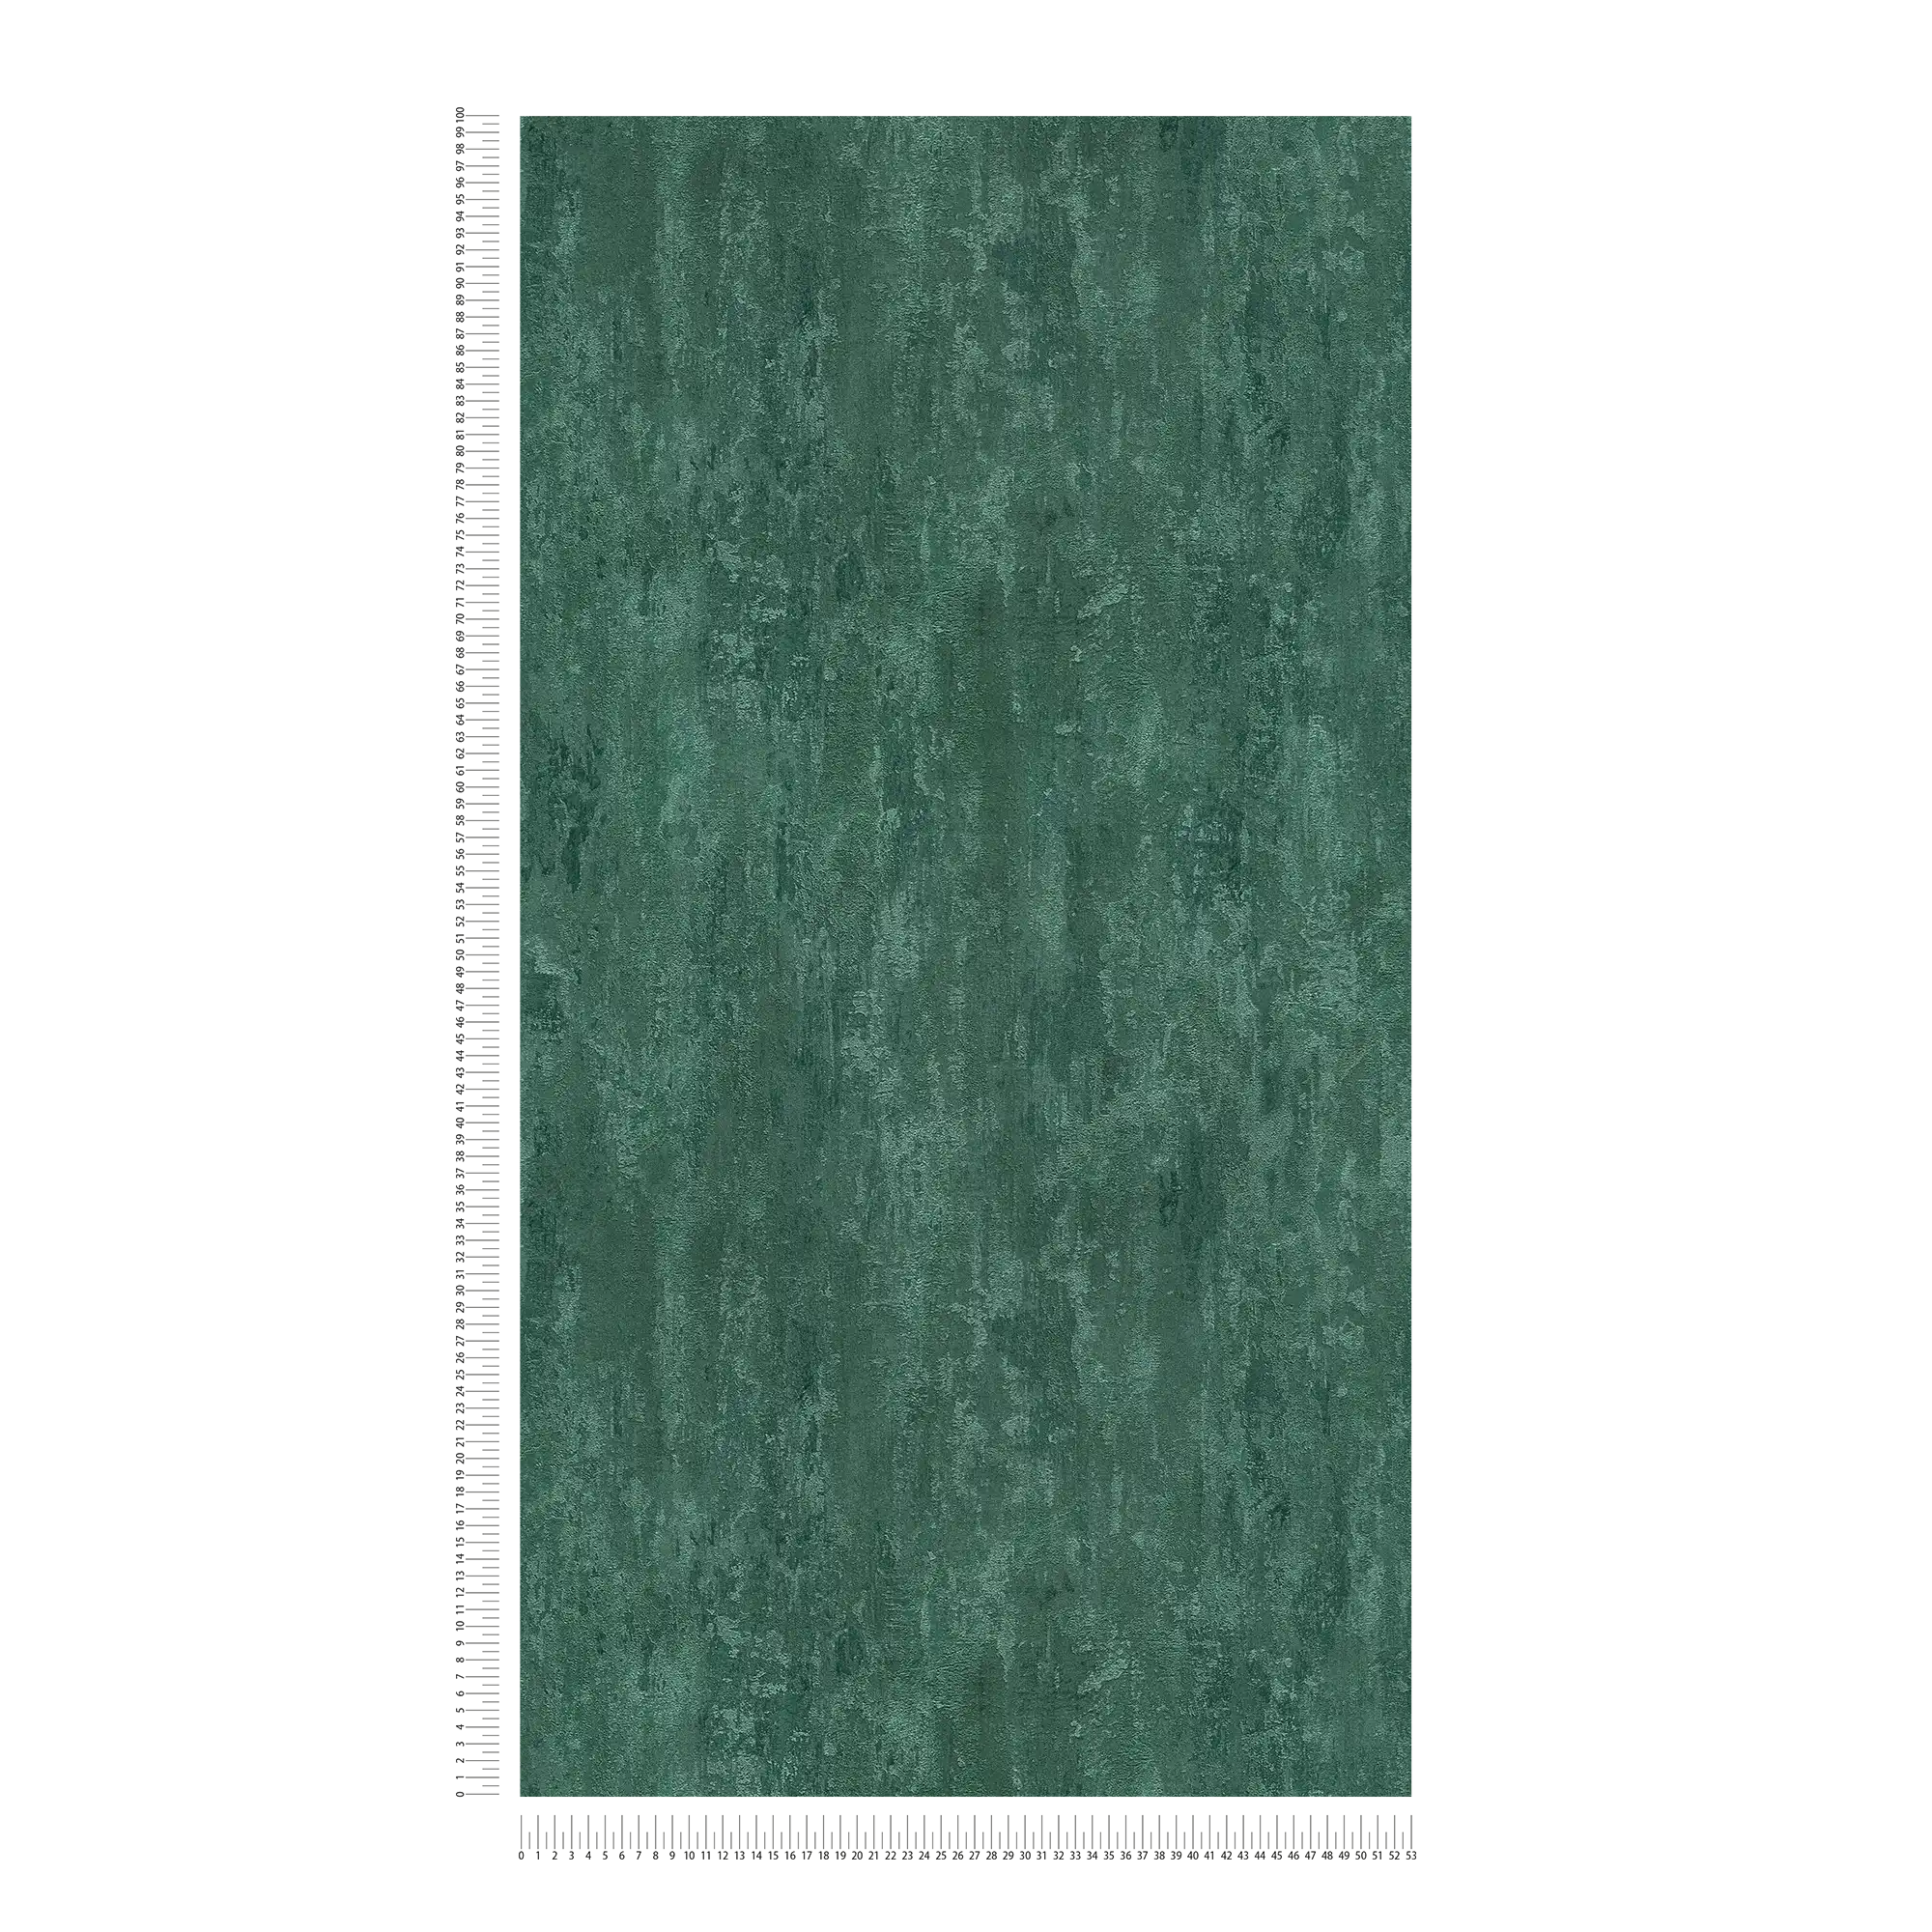             carta da parati in stile industriale con effetto texture - verde, metallizzata
        